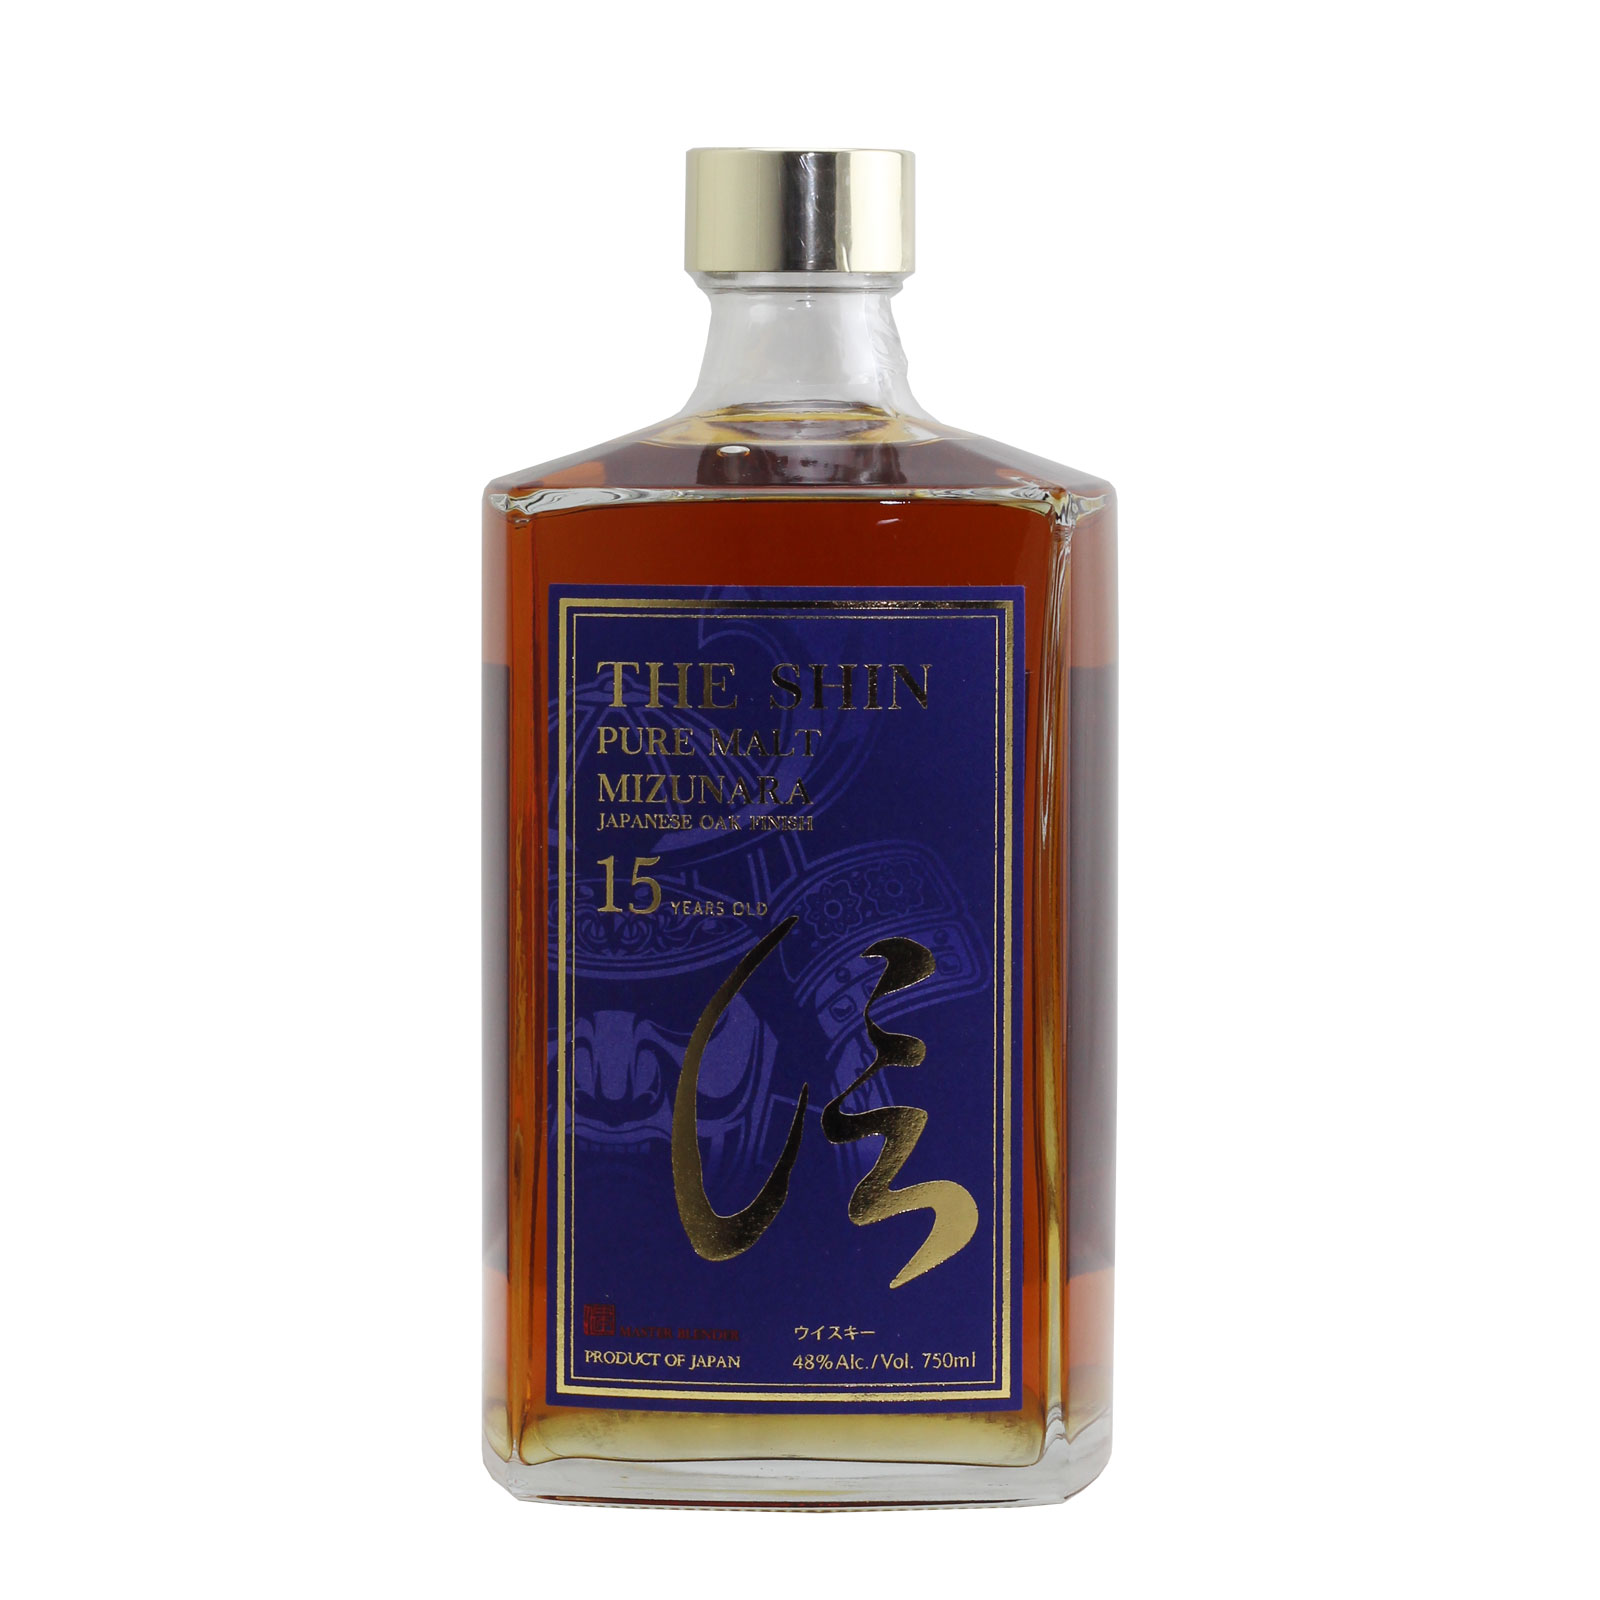 The Shin Pure Malt Whisky Mizunara Finish 15 Year Old 48% 750ml